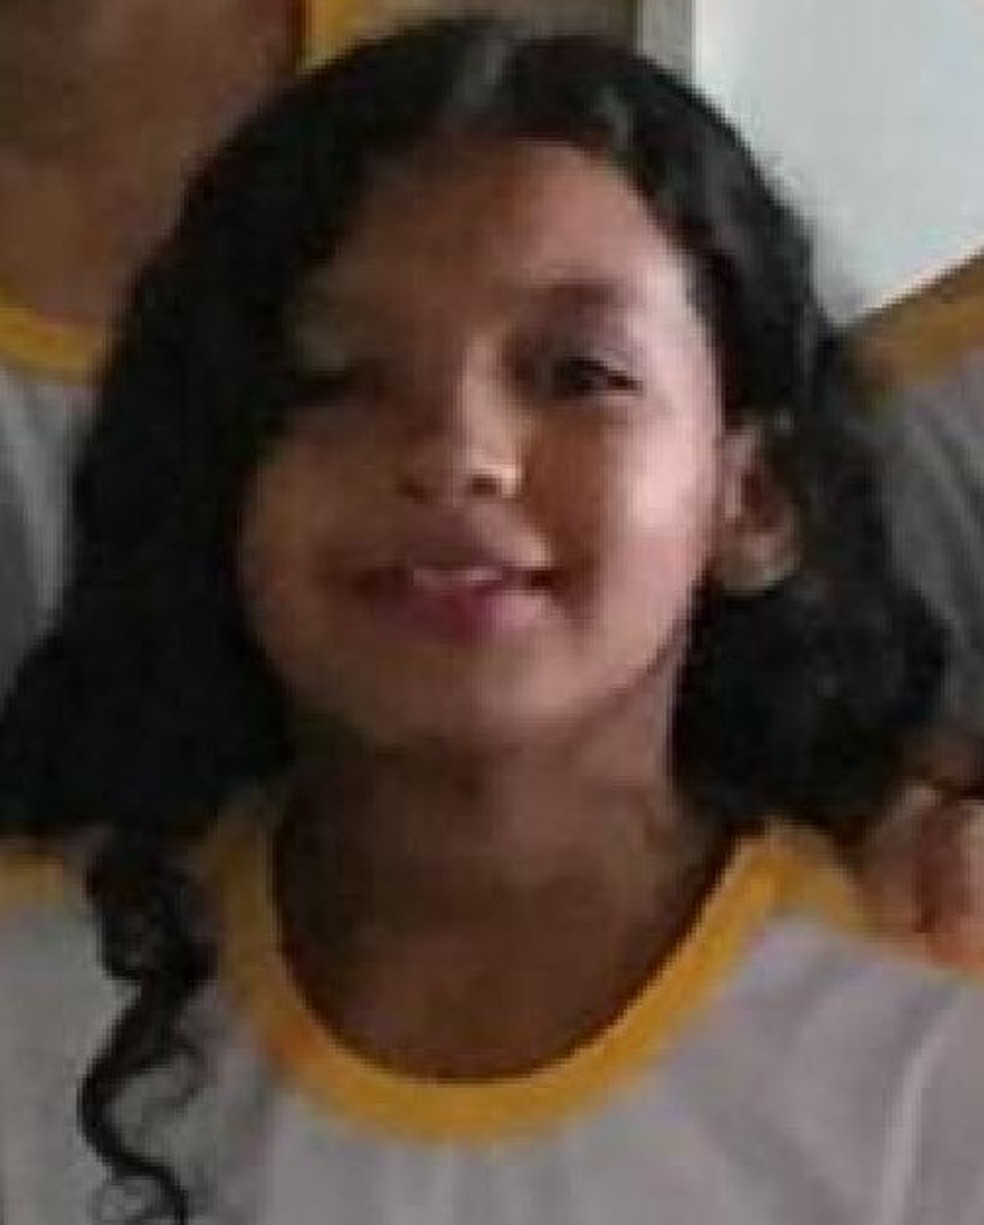 CrianÃ§a de 11 anos foi morta durante tiroteio em Rio Branco em maio deste ano (Foto: Arquivo pessoal)